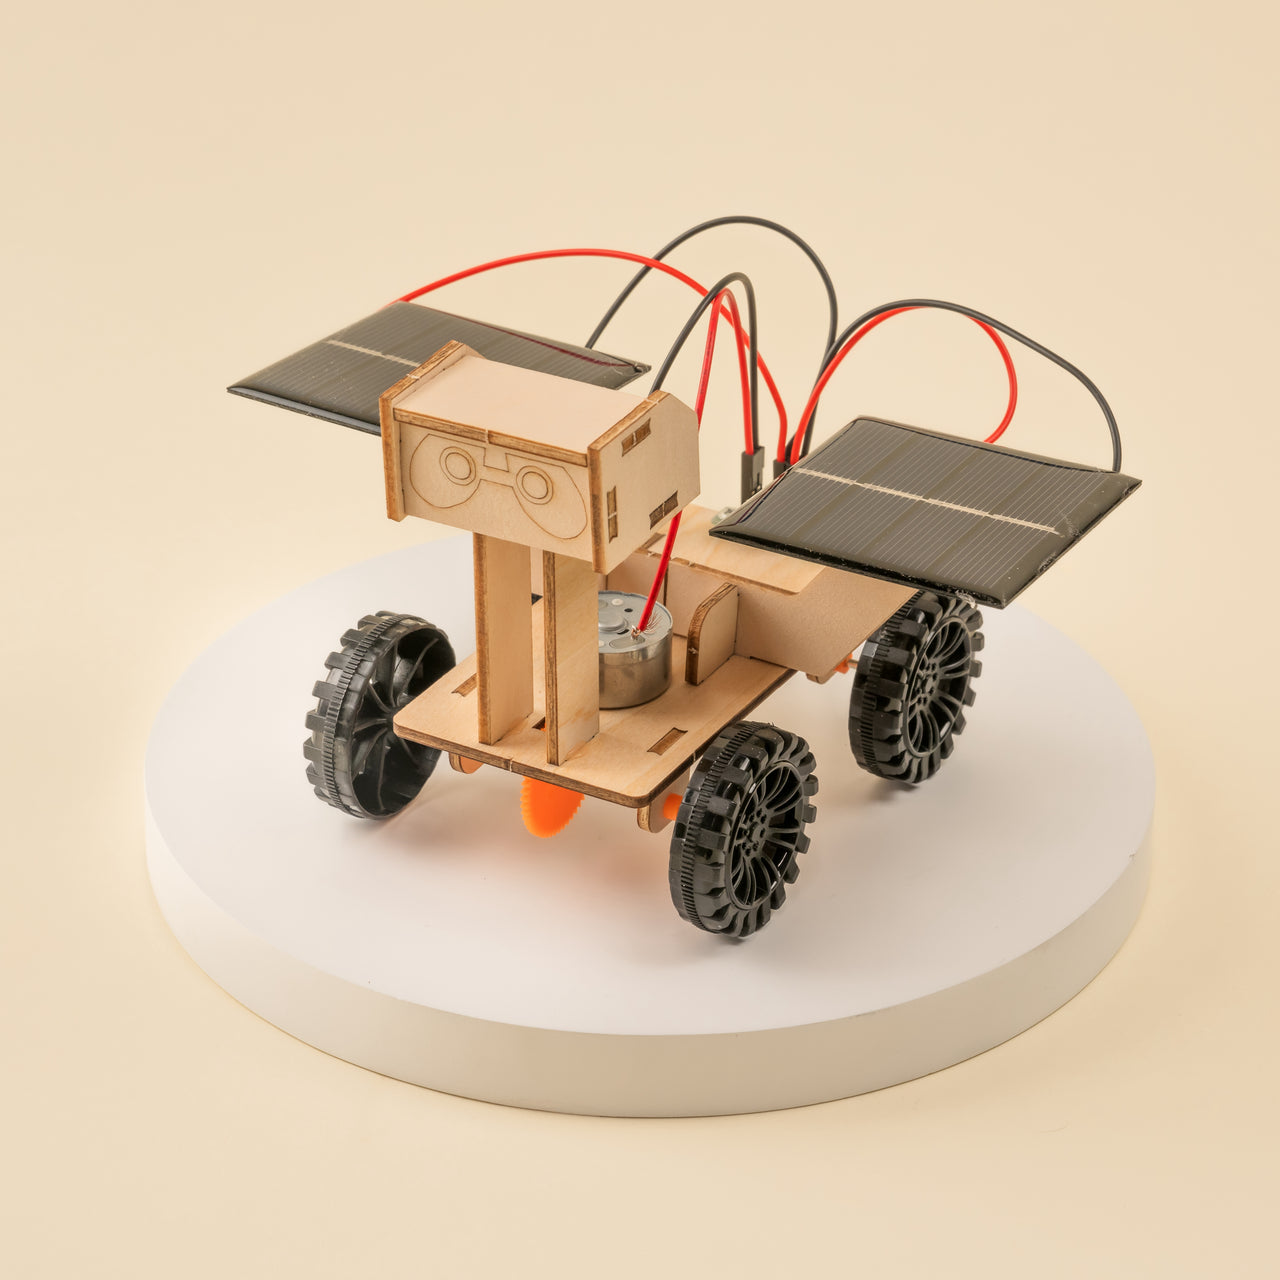 Kit de bricolage CreateKit pour rover d'exploration de Mars à énergie solaire